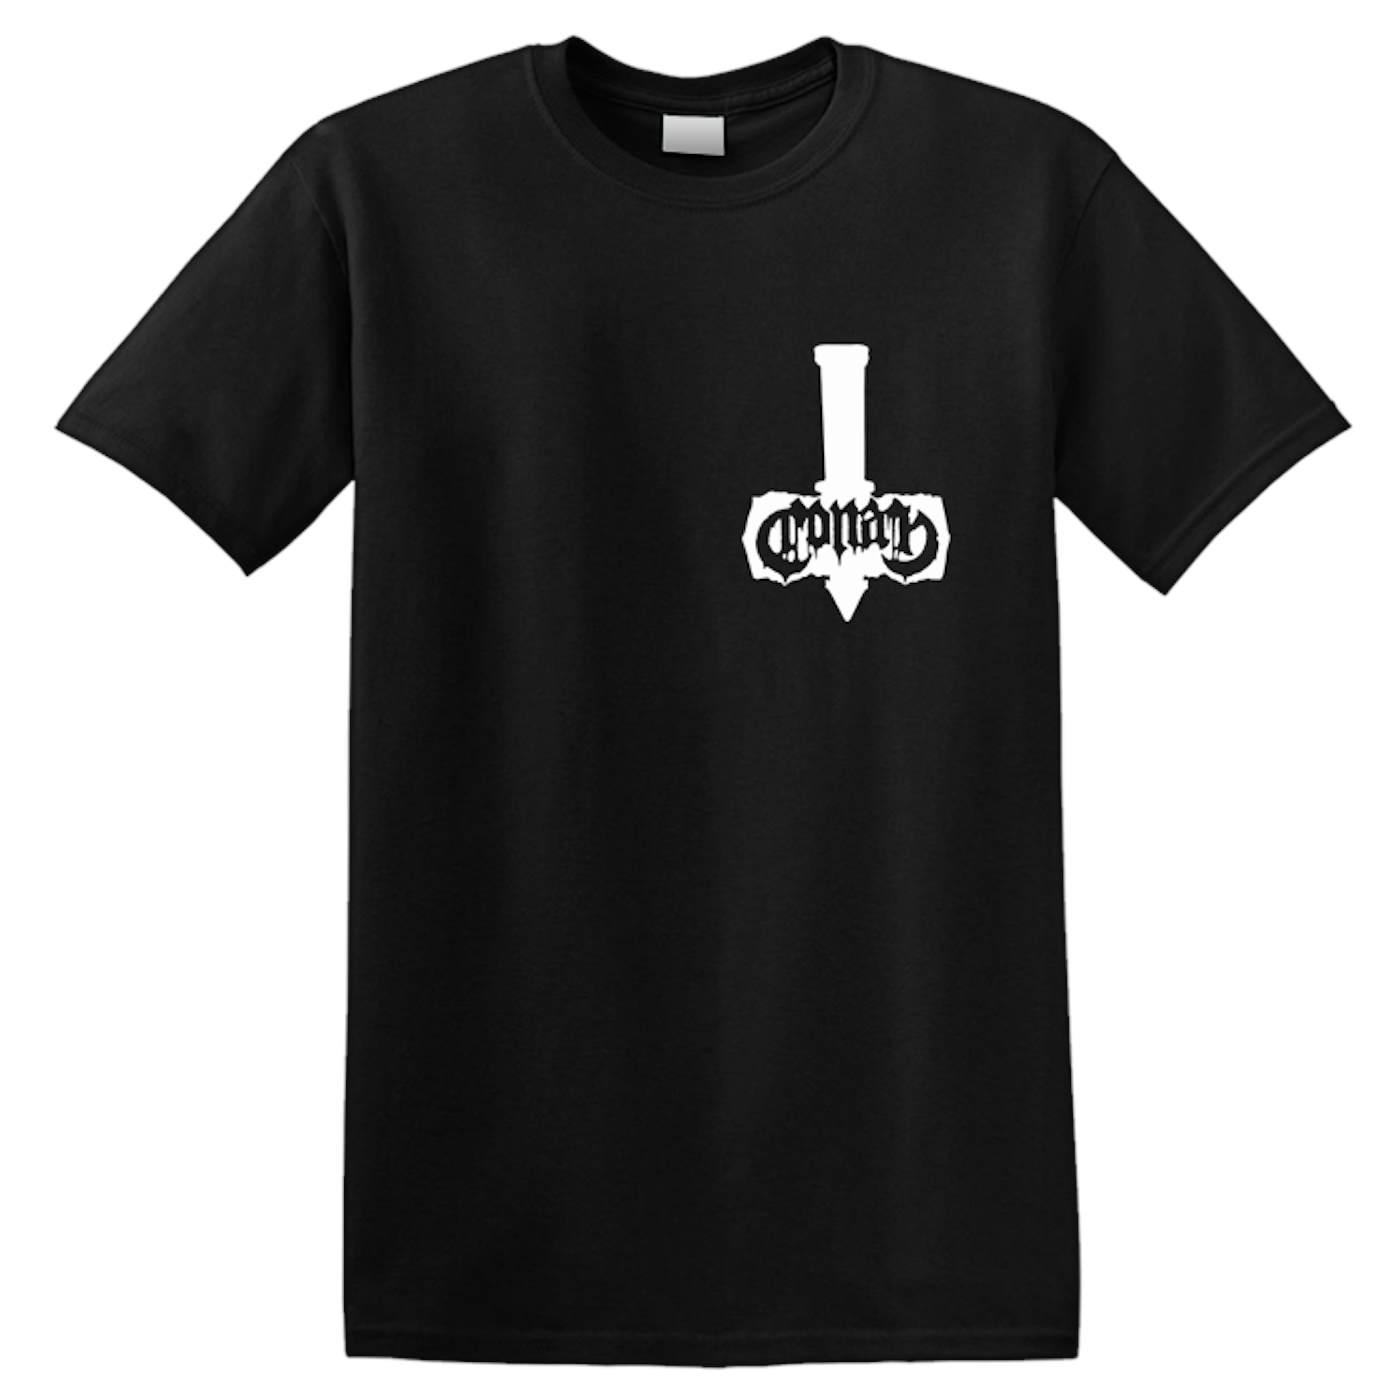 CONAN - 'Aus/NZ Tour' T-Shirt